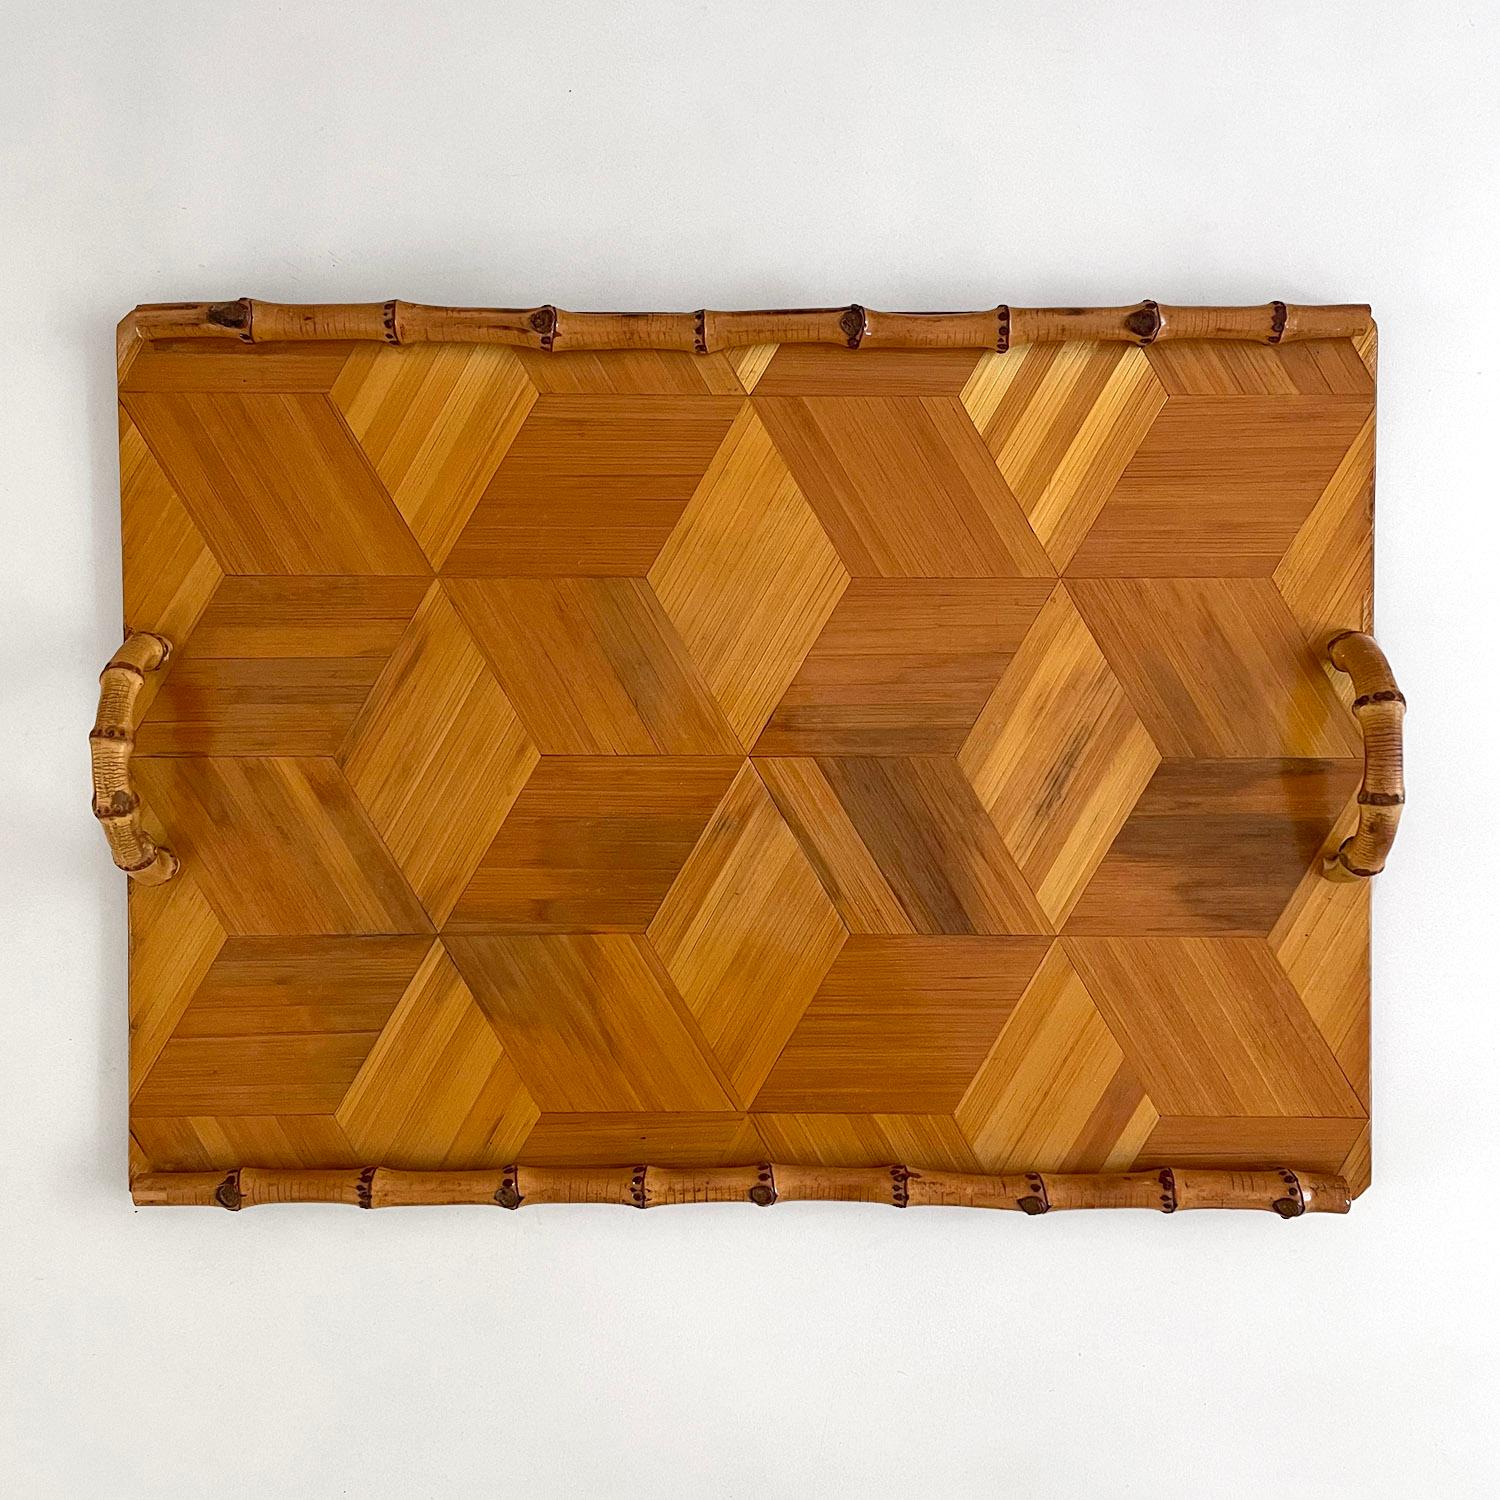 Das Tablett aus französischem Intarsienholz mit Bambusgriffen ist das perfekte Serviceobjekt oder eine wunderbare Ergänzung für jeden Couchtisch 
Natürliche Farbvariationen überall 
Abgerundete Bambuszierleisten und geschwungene